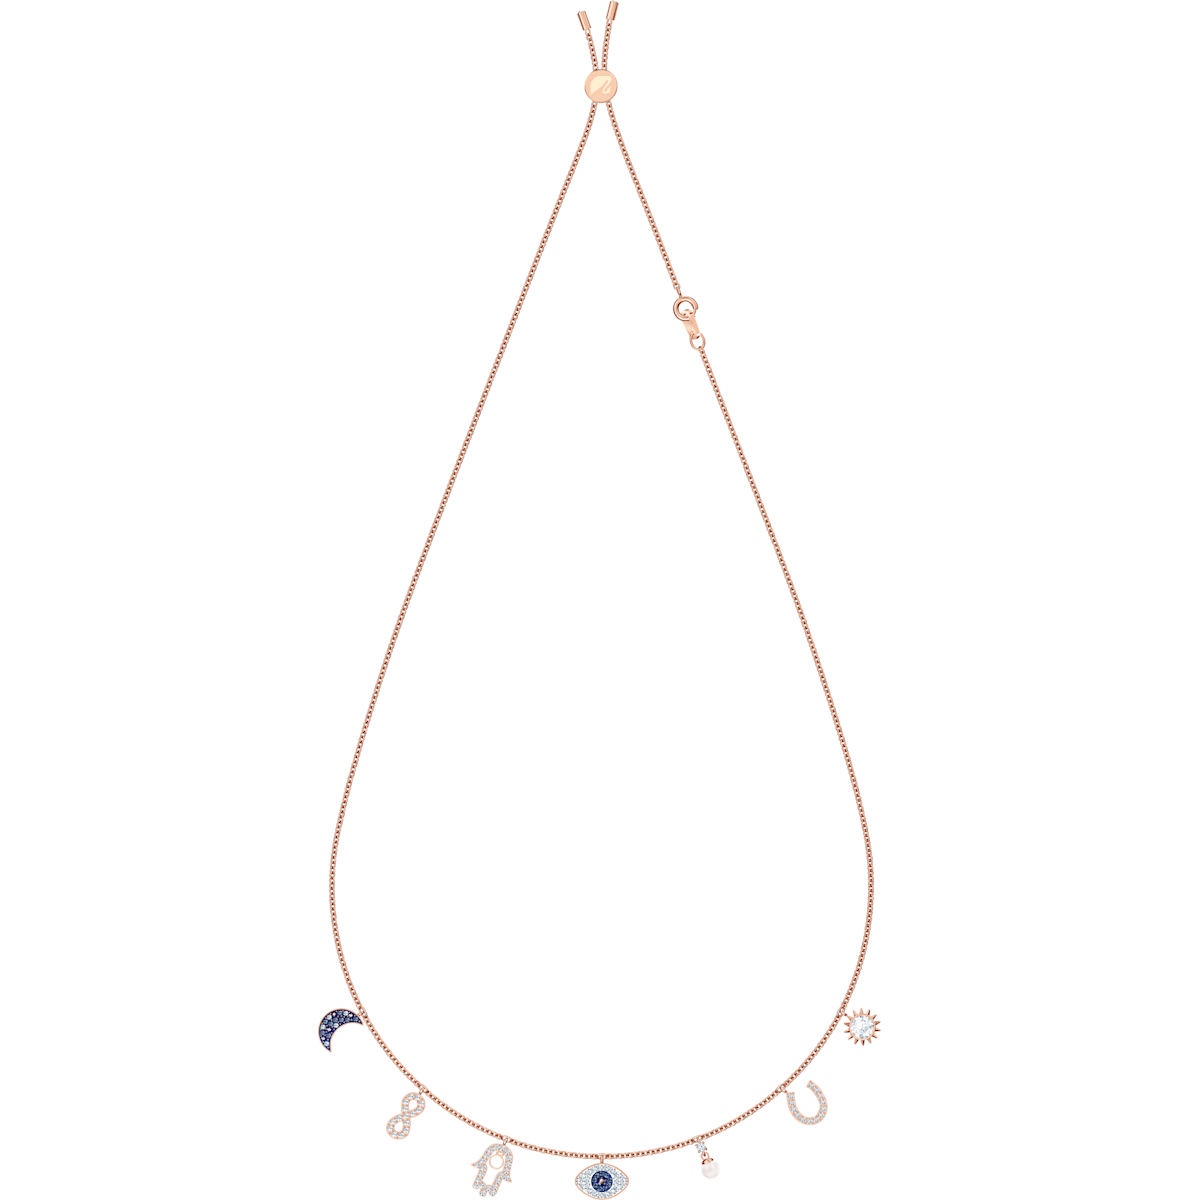 Swarovski - Swarovski Symbolic Halskette, Mond, Unendlichzeichen, Hand, Augensymbol und Hufeisen, Blau, Rosegold-Legierungsschicht - CRYSTAL UNTERBERGER